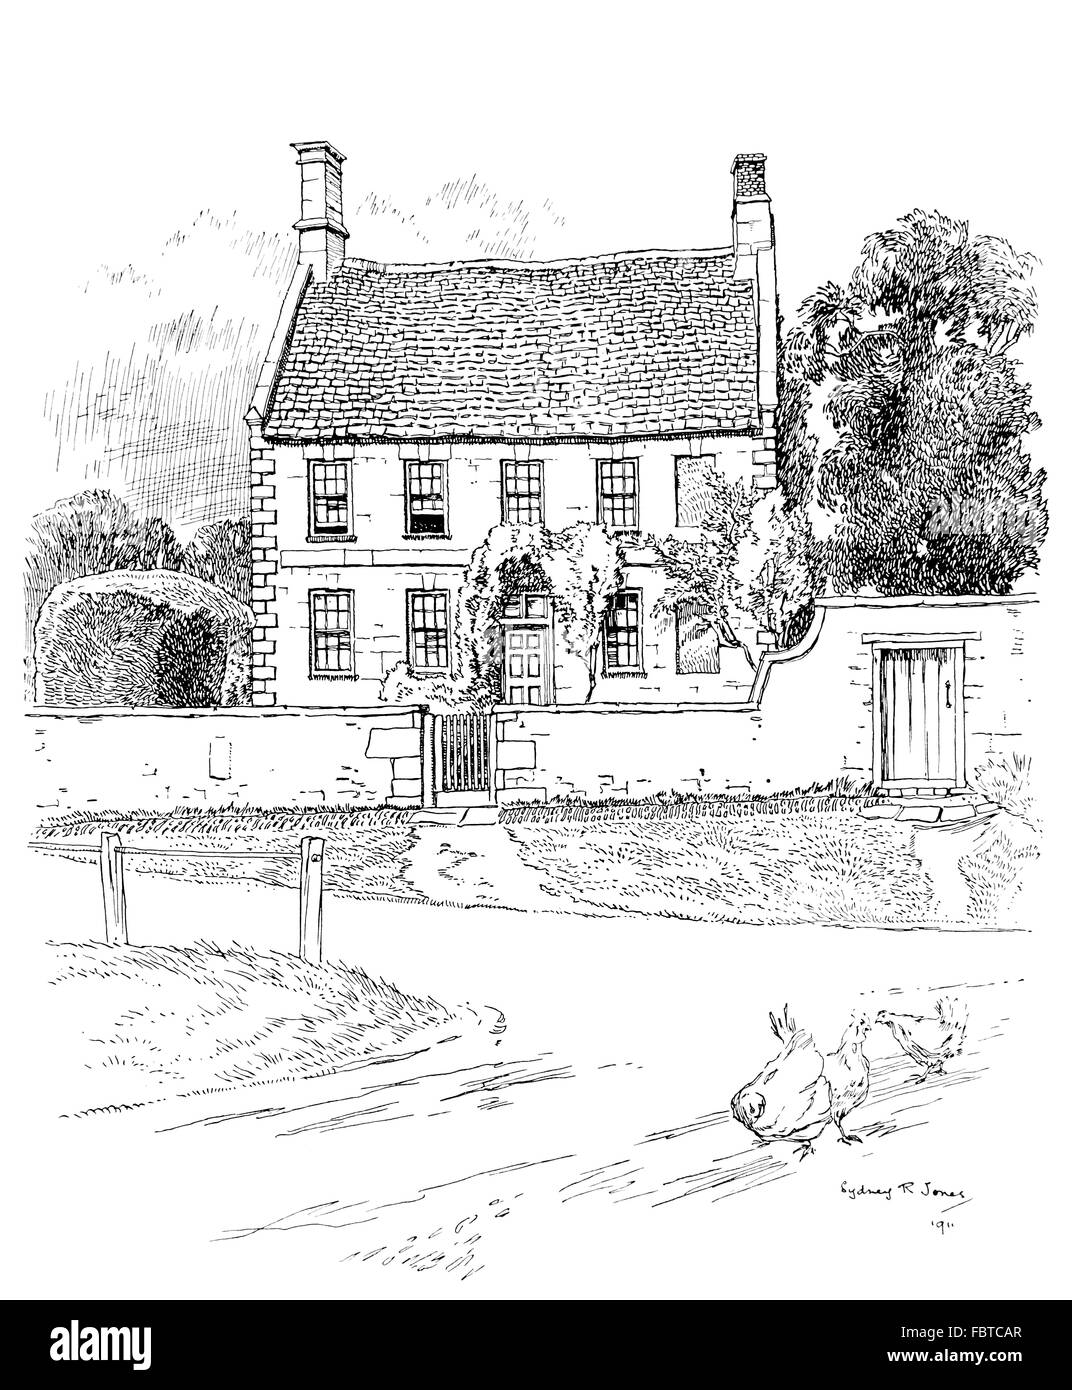 Regno Unito, Inghilterra, Northamptonshire, Boddington superiore, Warwick Road, Manor House nel 1911, illustrazione di linea da, Sydney R Jones Foto Stock